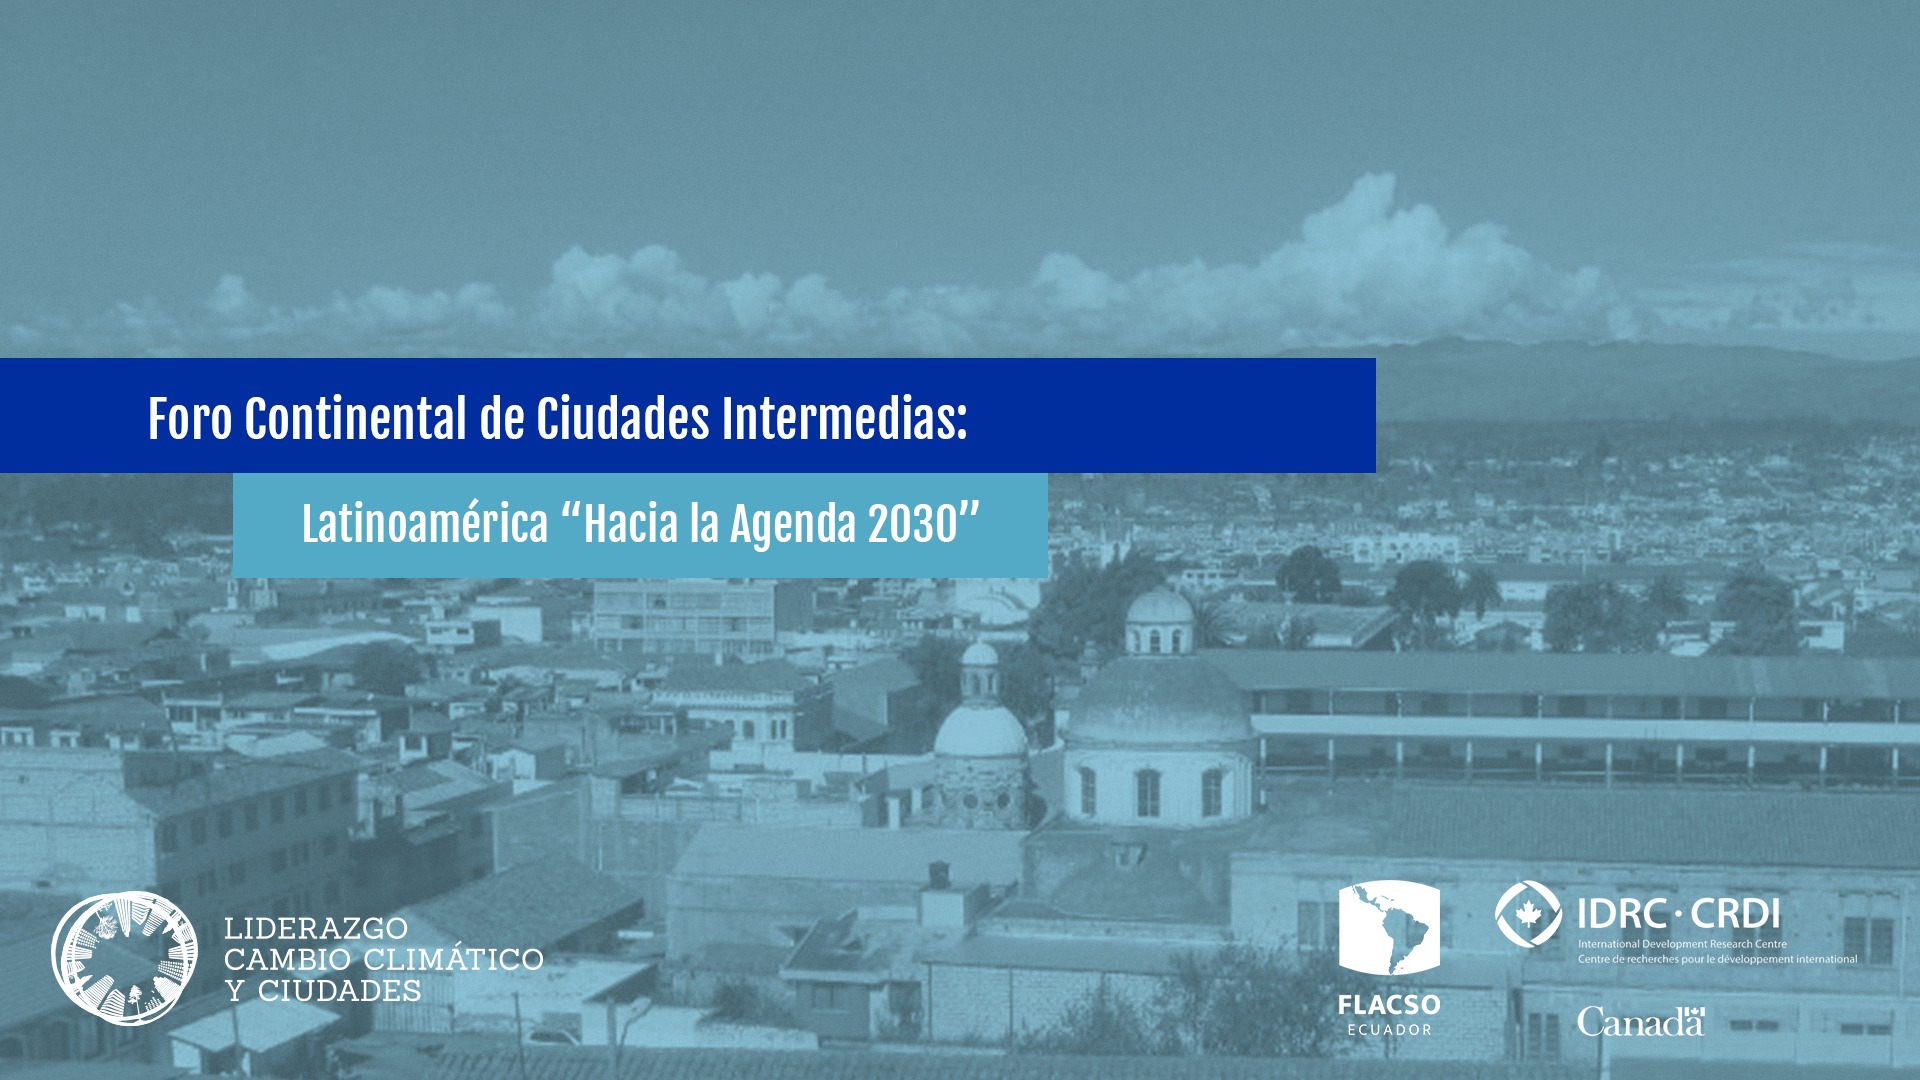 Foro Continental de Ciudades Intermedias: Latinoamérica “Hacia la Agenda 2030”